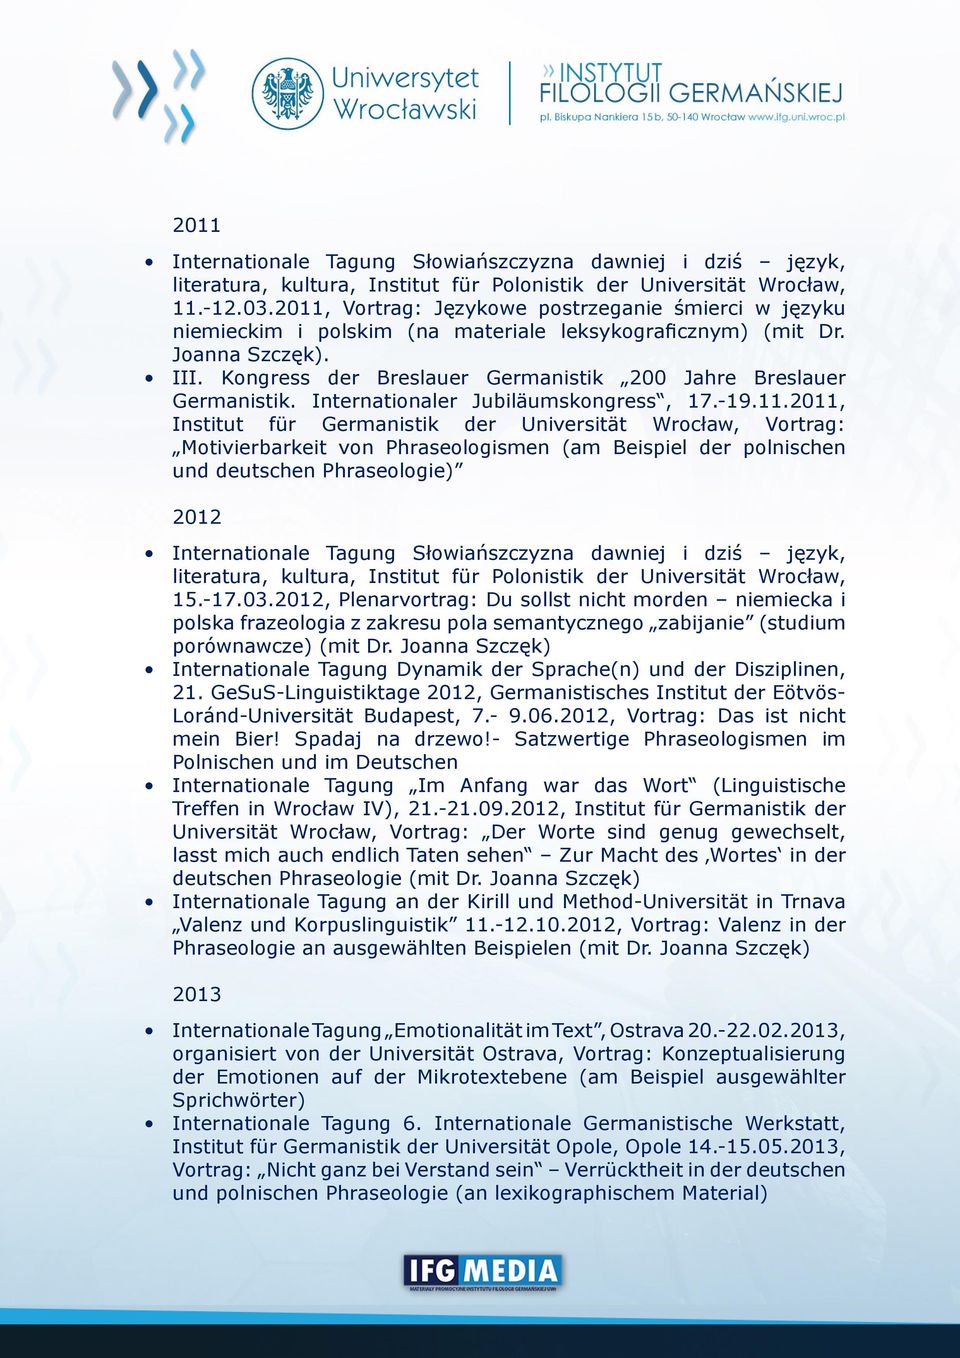 Kongress der Breslauer Germanistik 200 Jahre Breslauer Germanistik. Internationaler Jubiläumskongress, 17.-19.11.